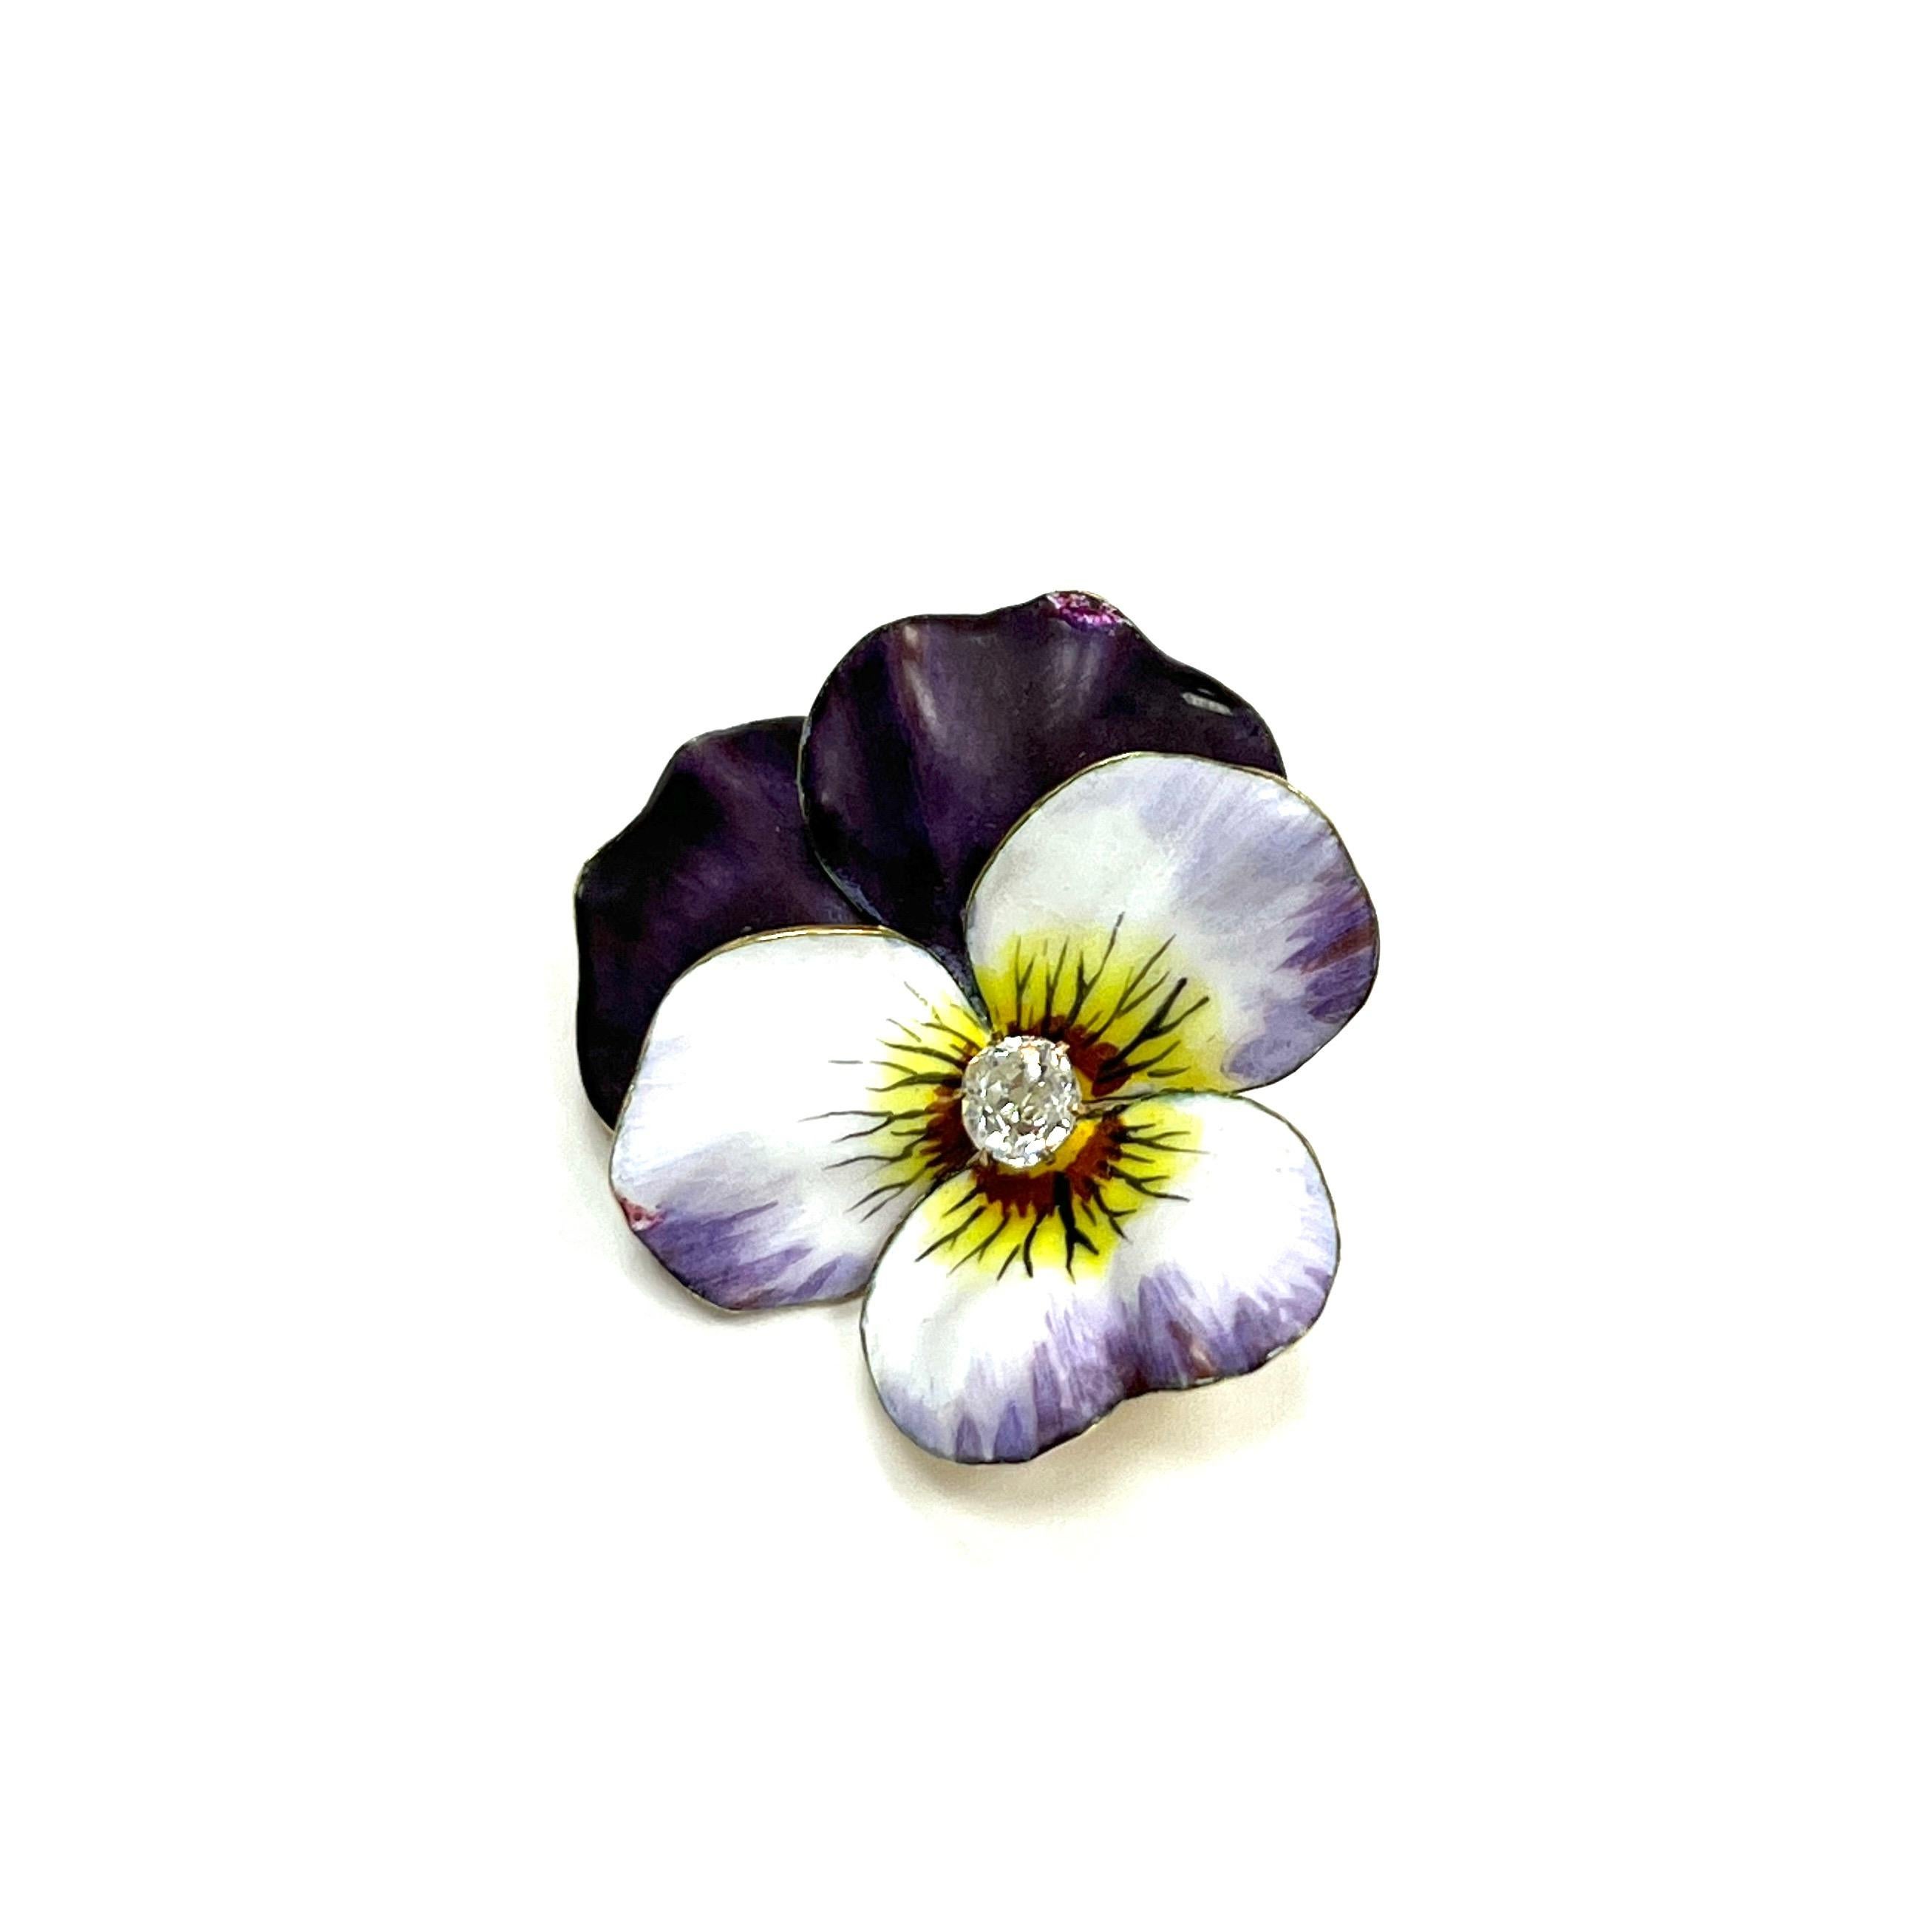 Jugendstil lila Stiefmütterchen Emaille-Brosche

In der Mitte befindet sich ein Diamant im Rundschliff, die Blütenblätter sind aus lila Emaille auf Gelbgold gefasst

Größe: Breite 2,6 cm, Länge 2,9 cm
Gesamtgewicht: 8,2 Gramm